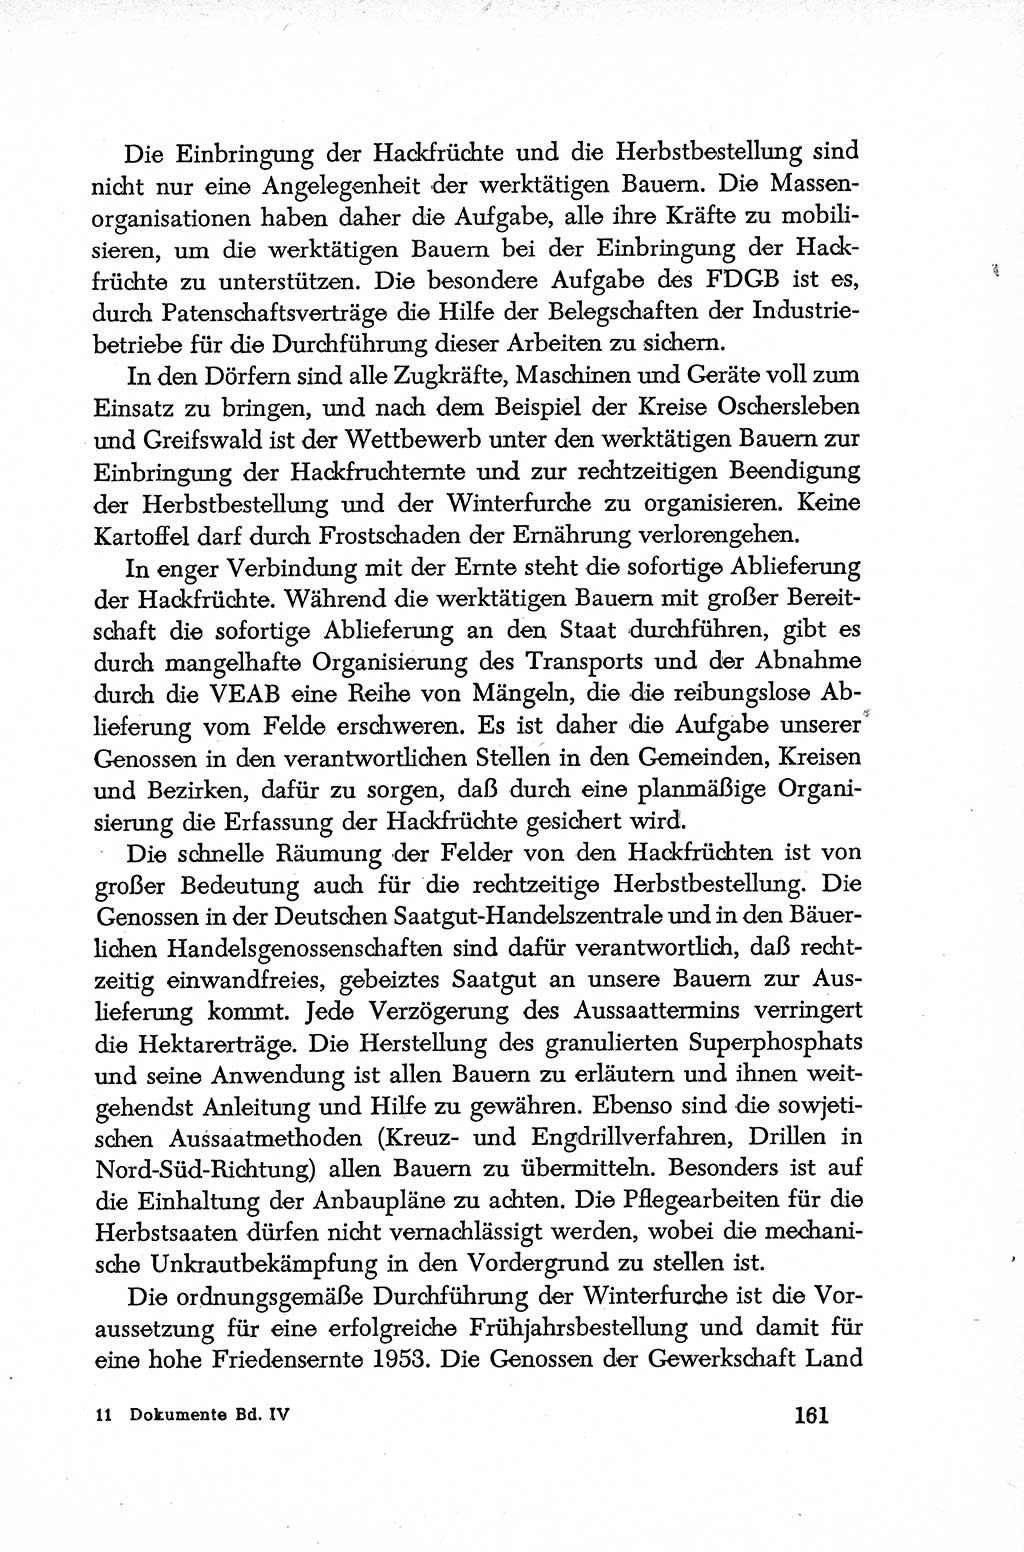 Dokumente der Sozialistischen Einheitspartei Deutschlands (SED) [Deutsche Demokratische Republik (DDR)] 1952-1953, Seite 161 (Dok. SED DDR 1952-1953, S. 161)